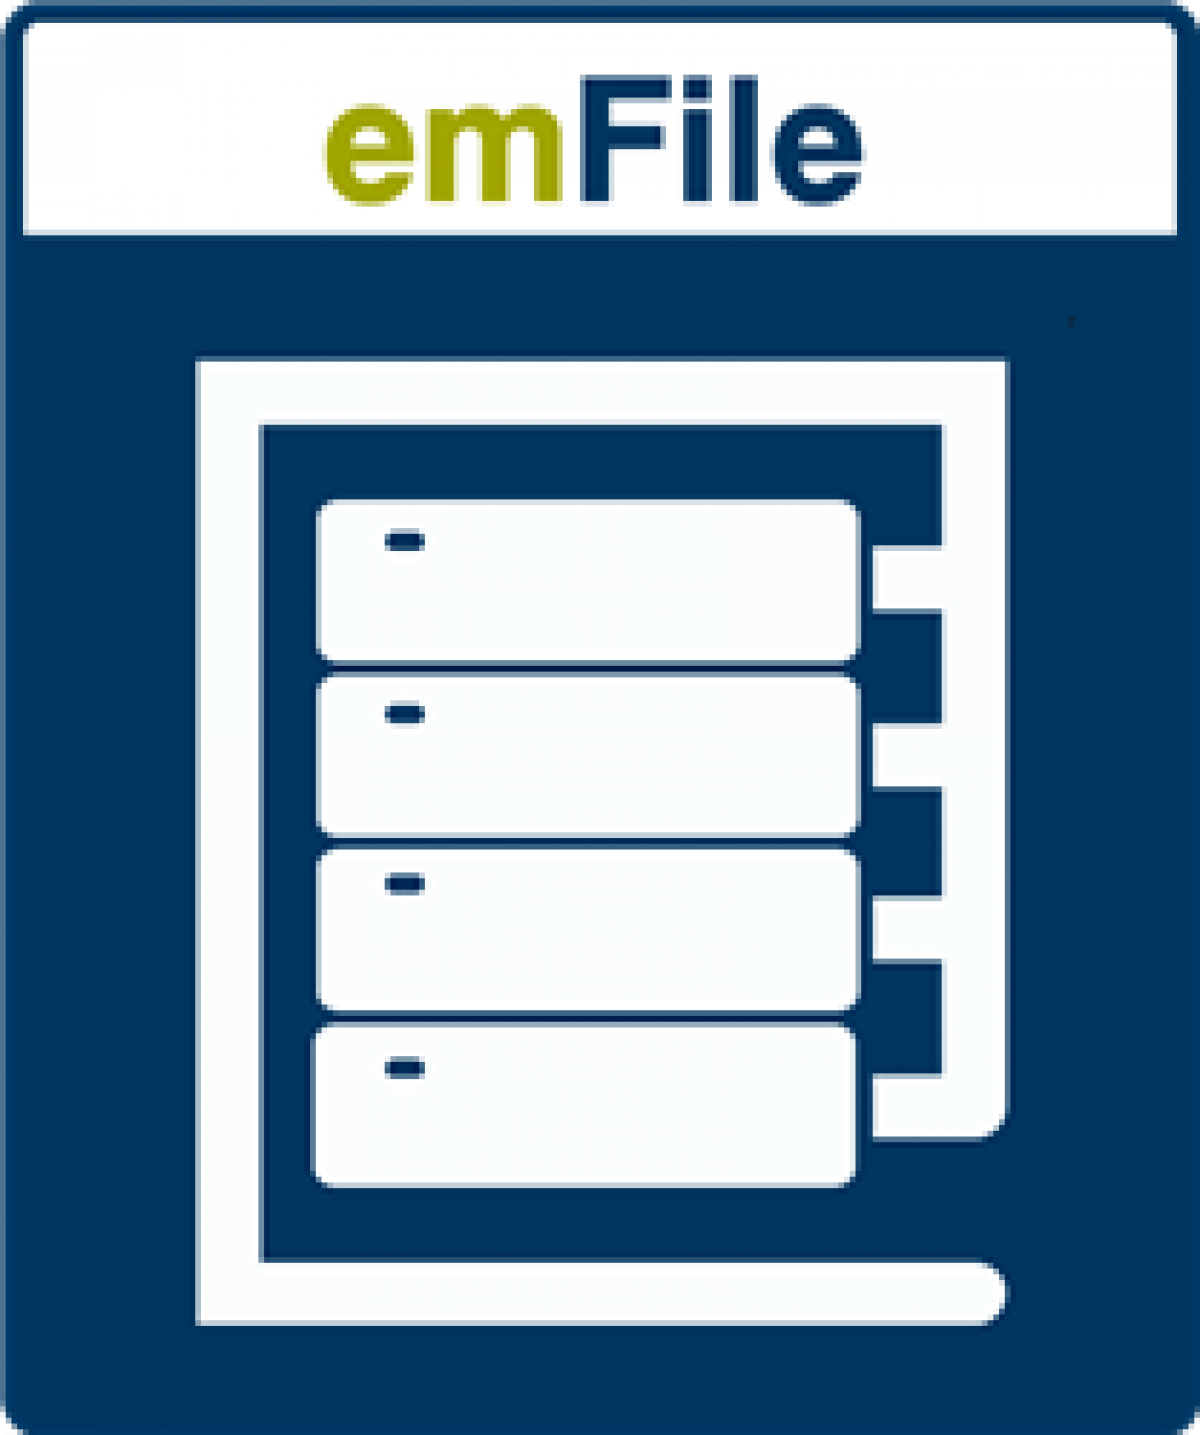 emFile - 組み込みファイルシステム